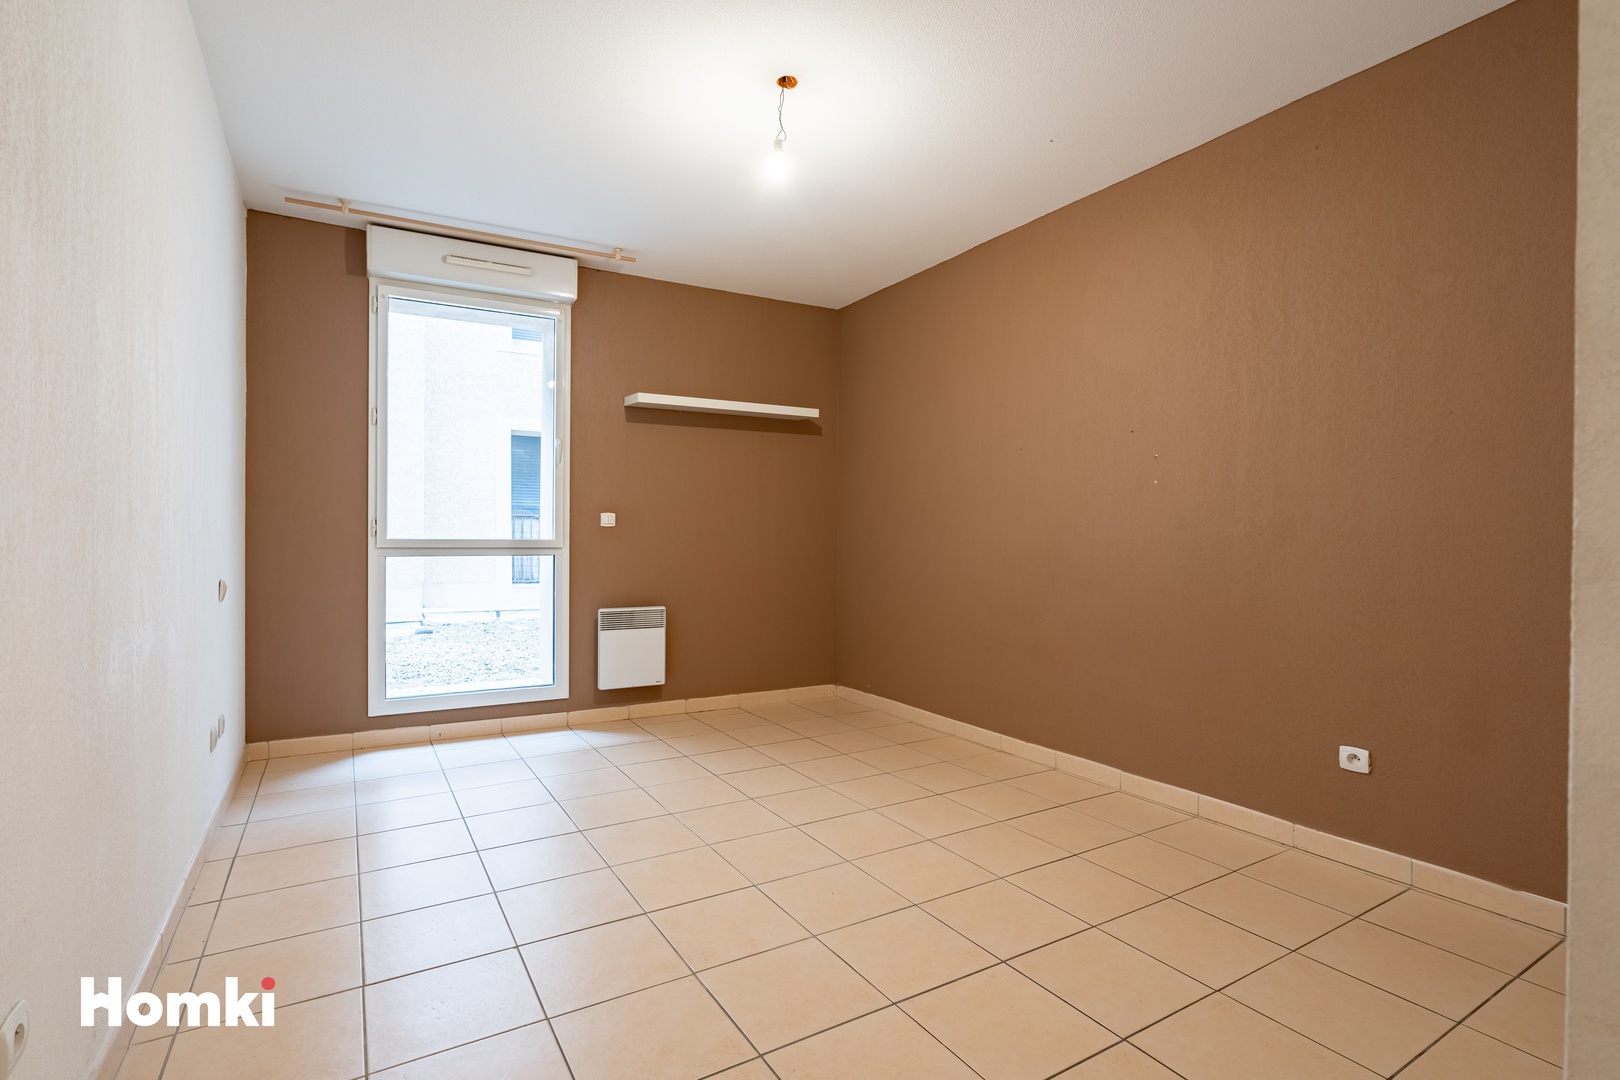 Homki - Vente Appartement  de 116.0 m² à Agde 34300